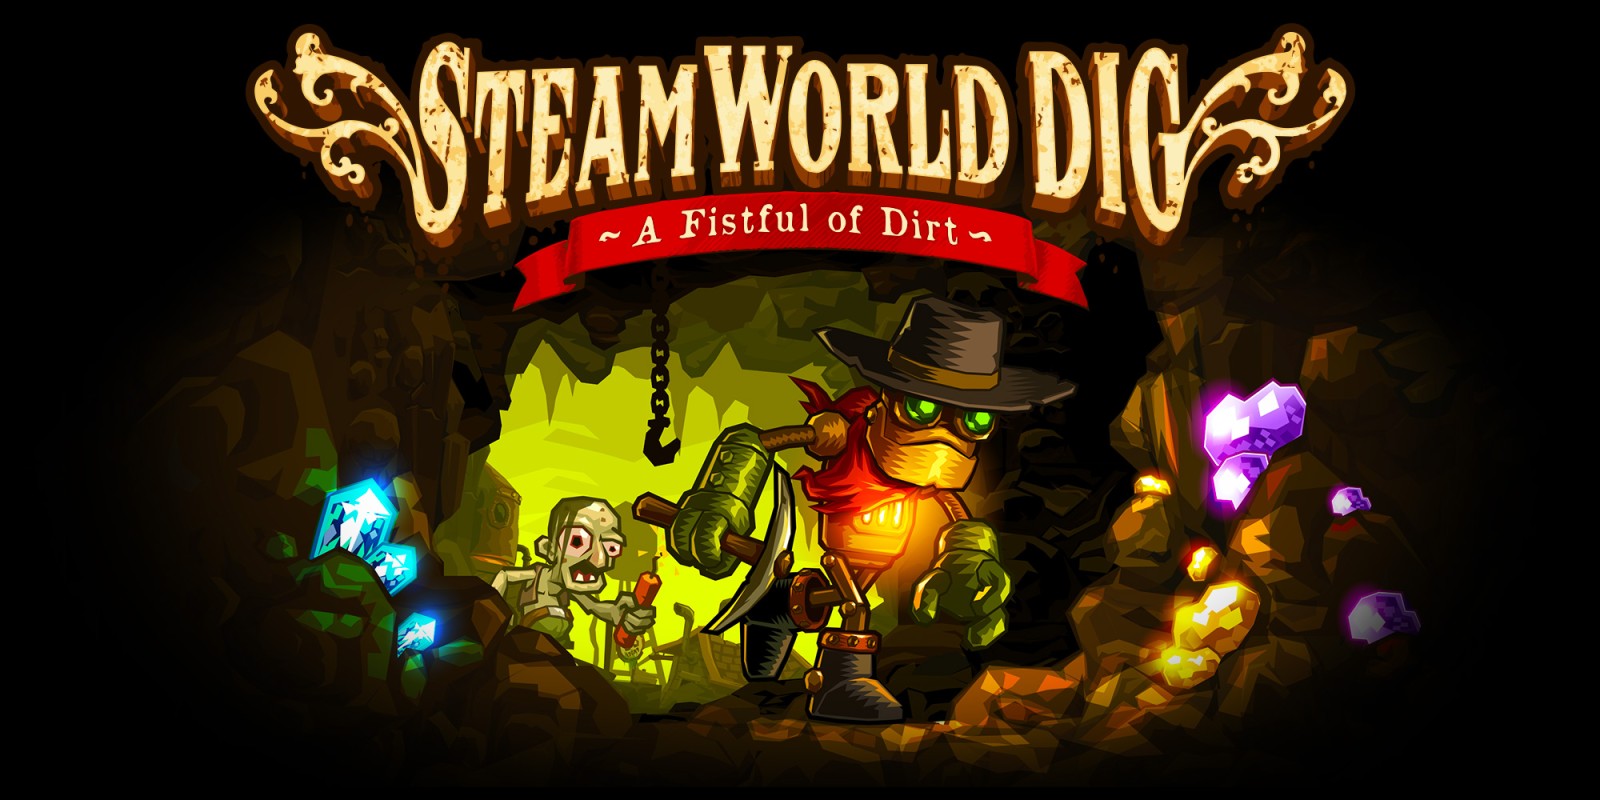 steamworld dig 2 rejected build plans